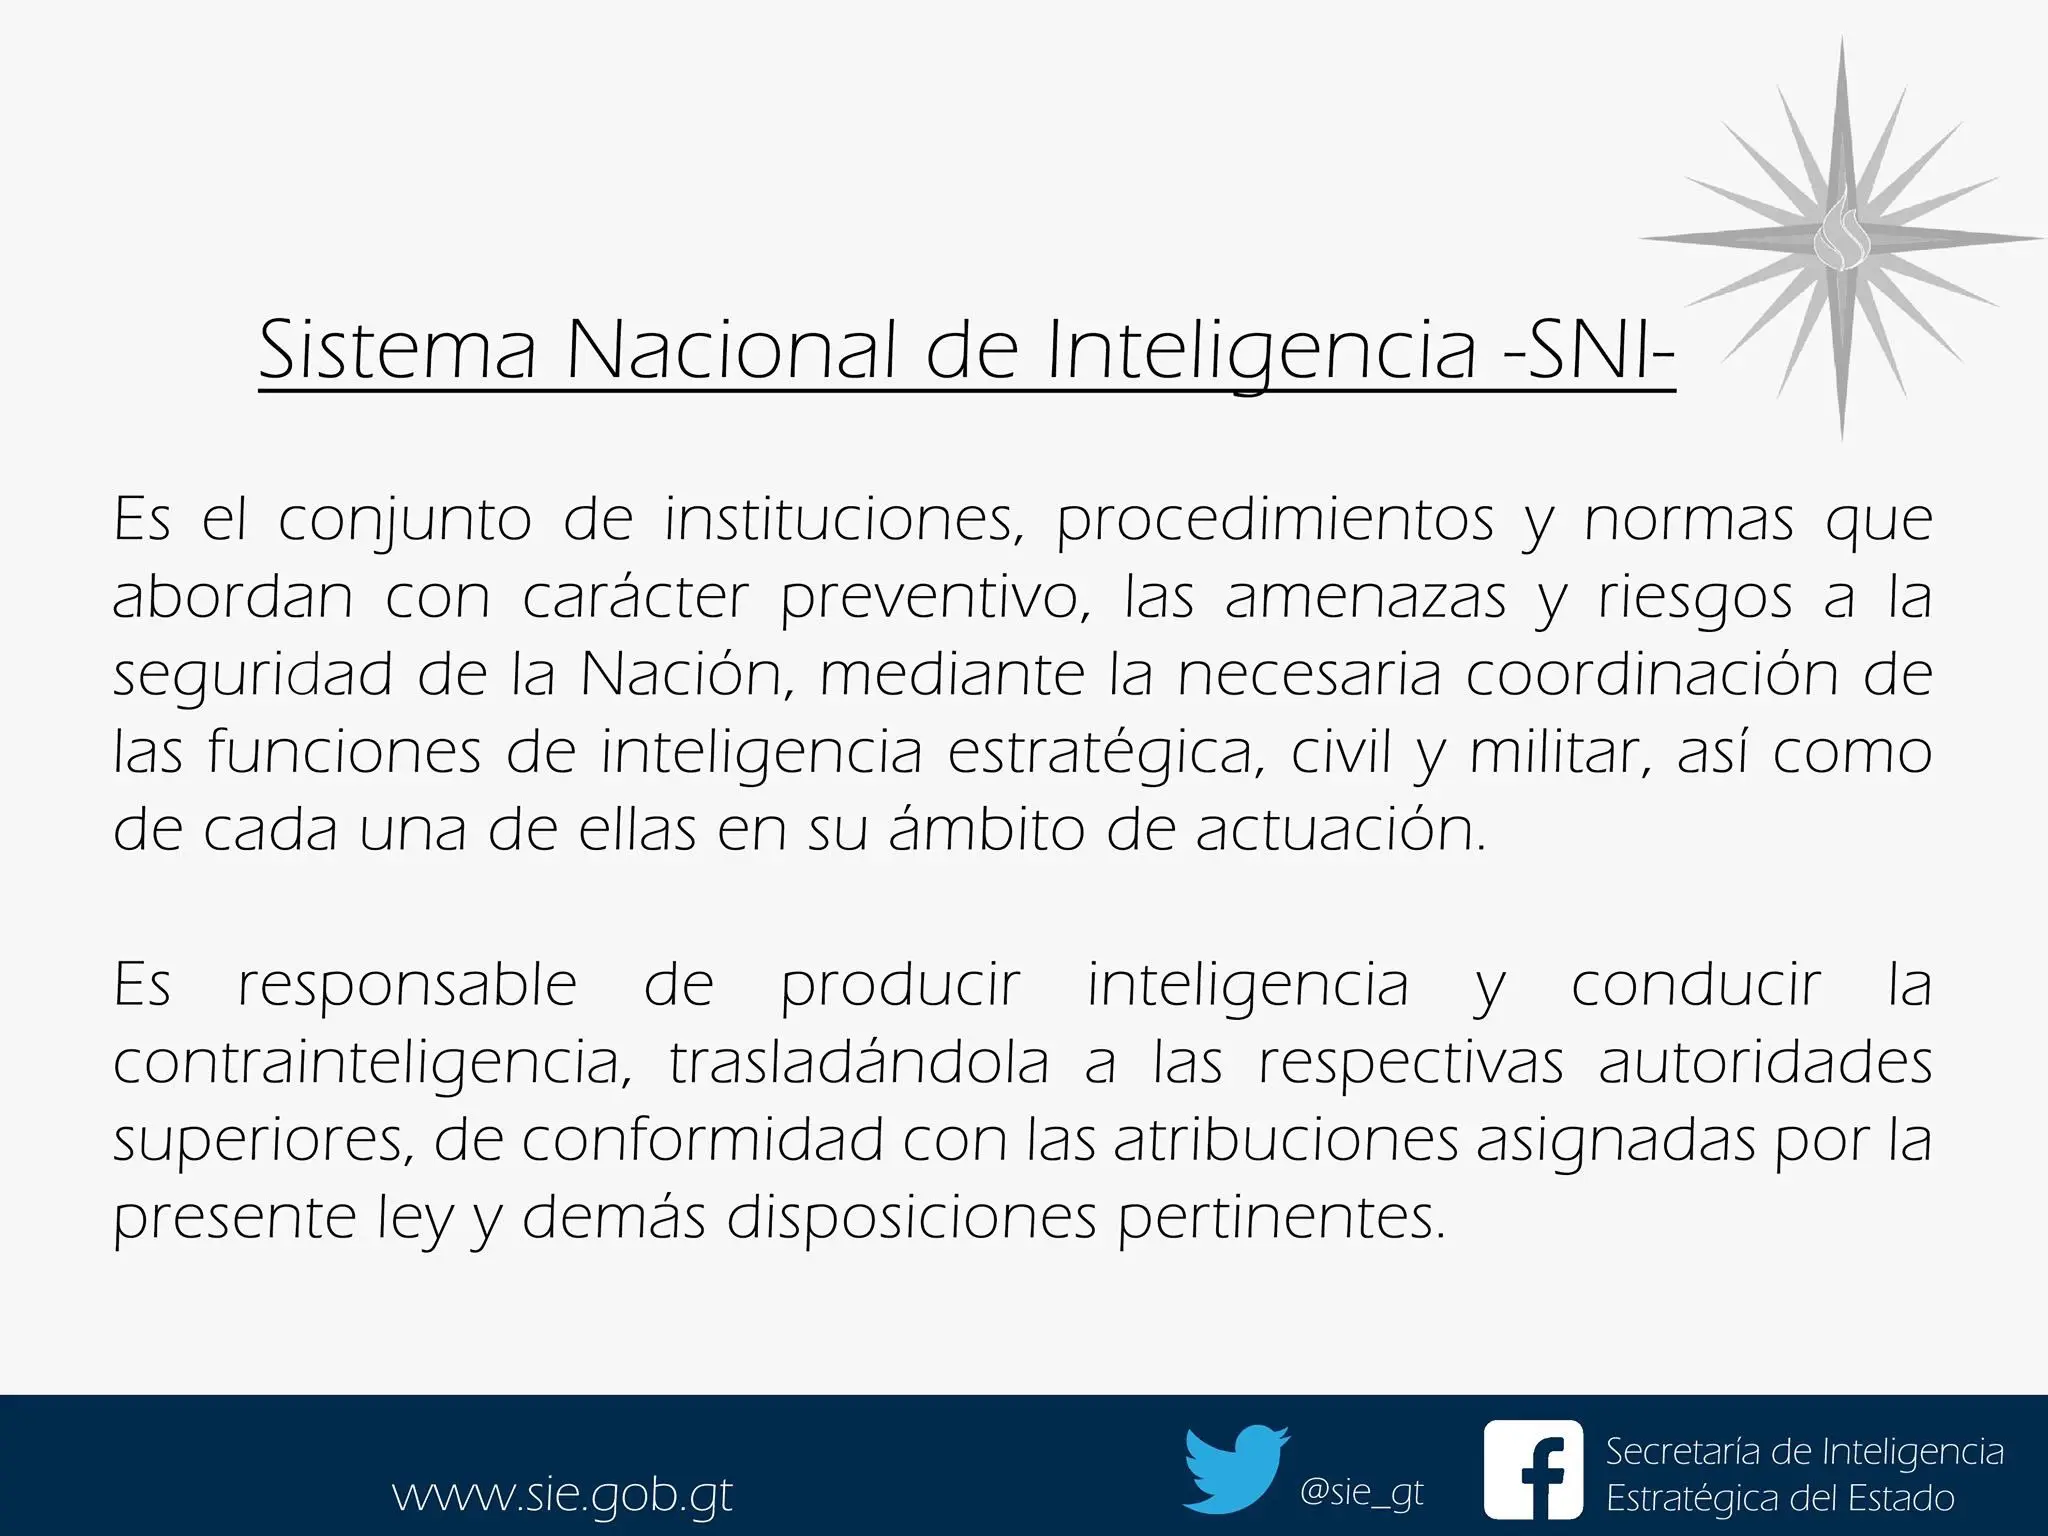 que es el sistema de inteligencia nacional - Qué es el sistema de inteligencia Nacional del Perú